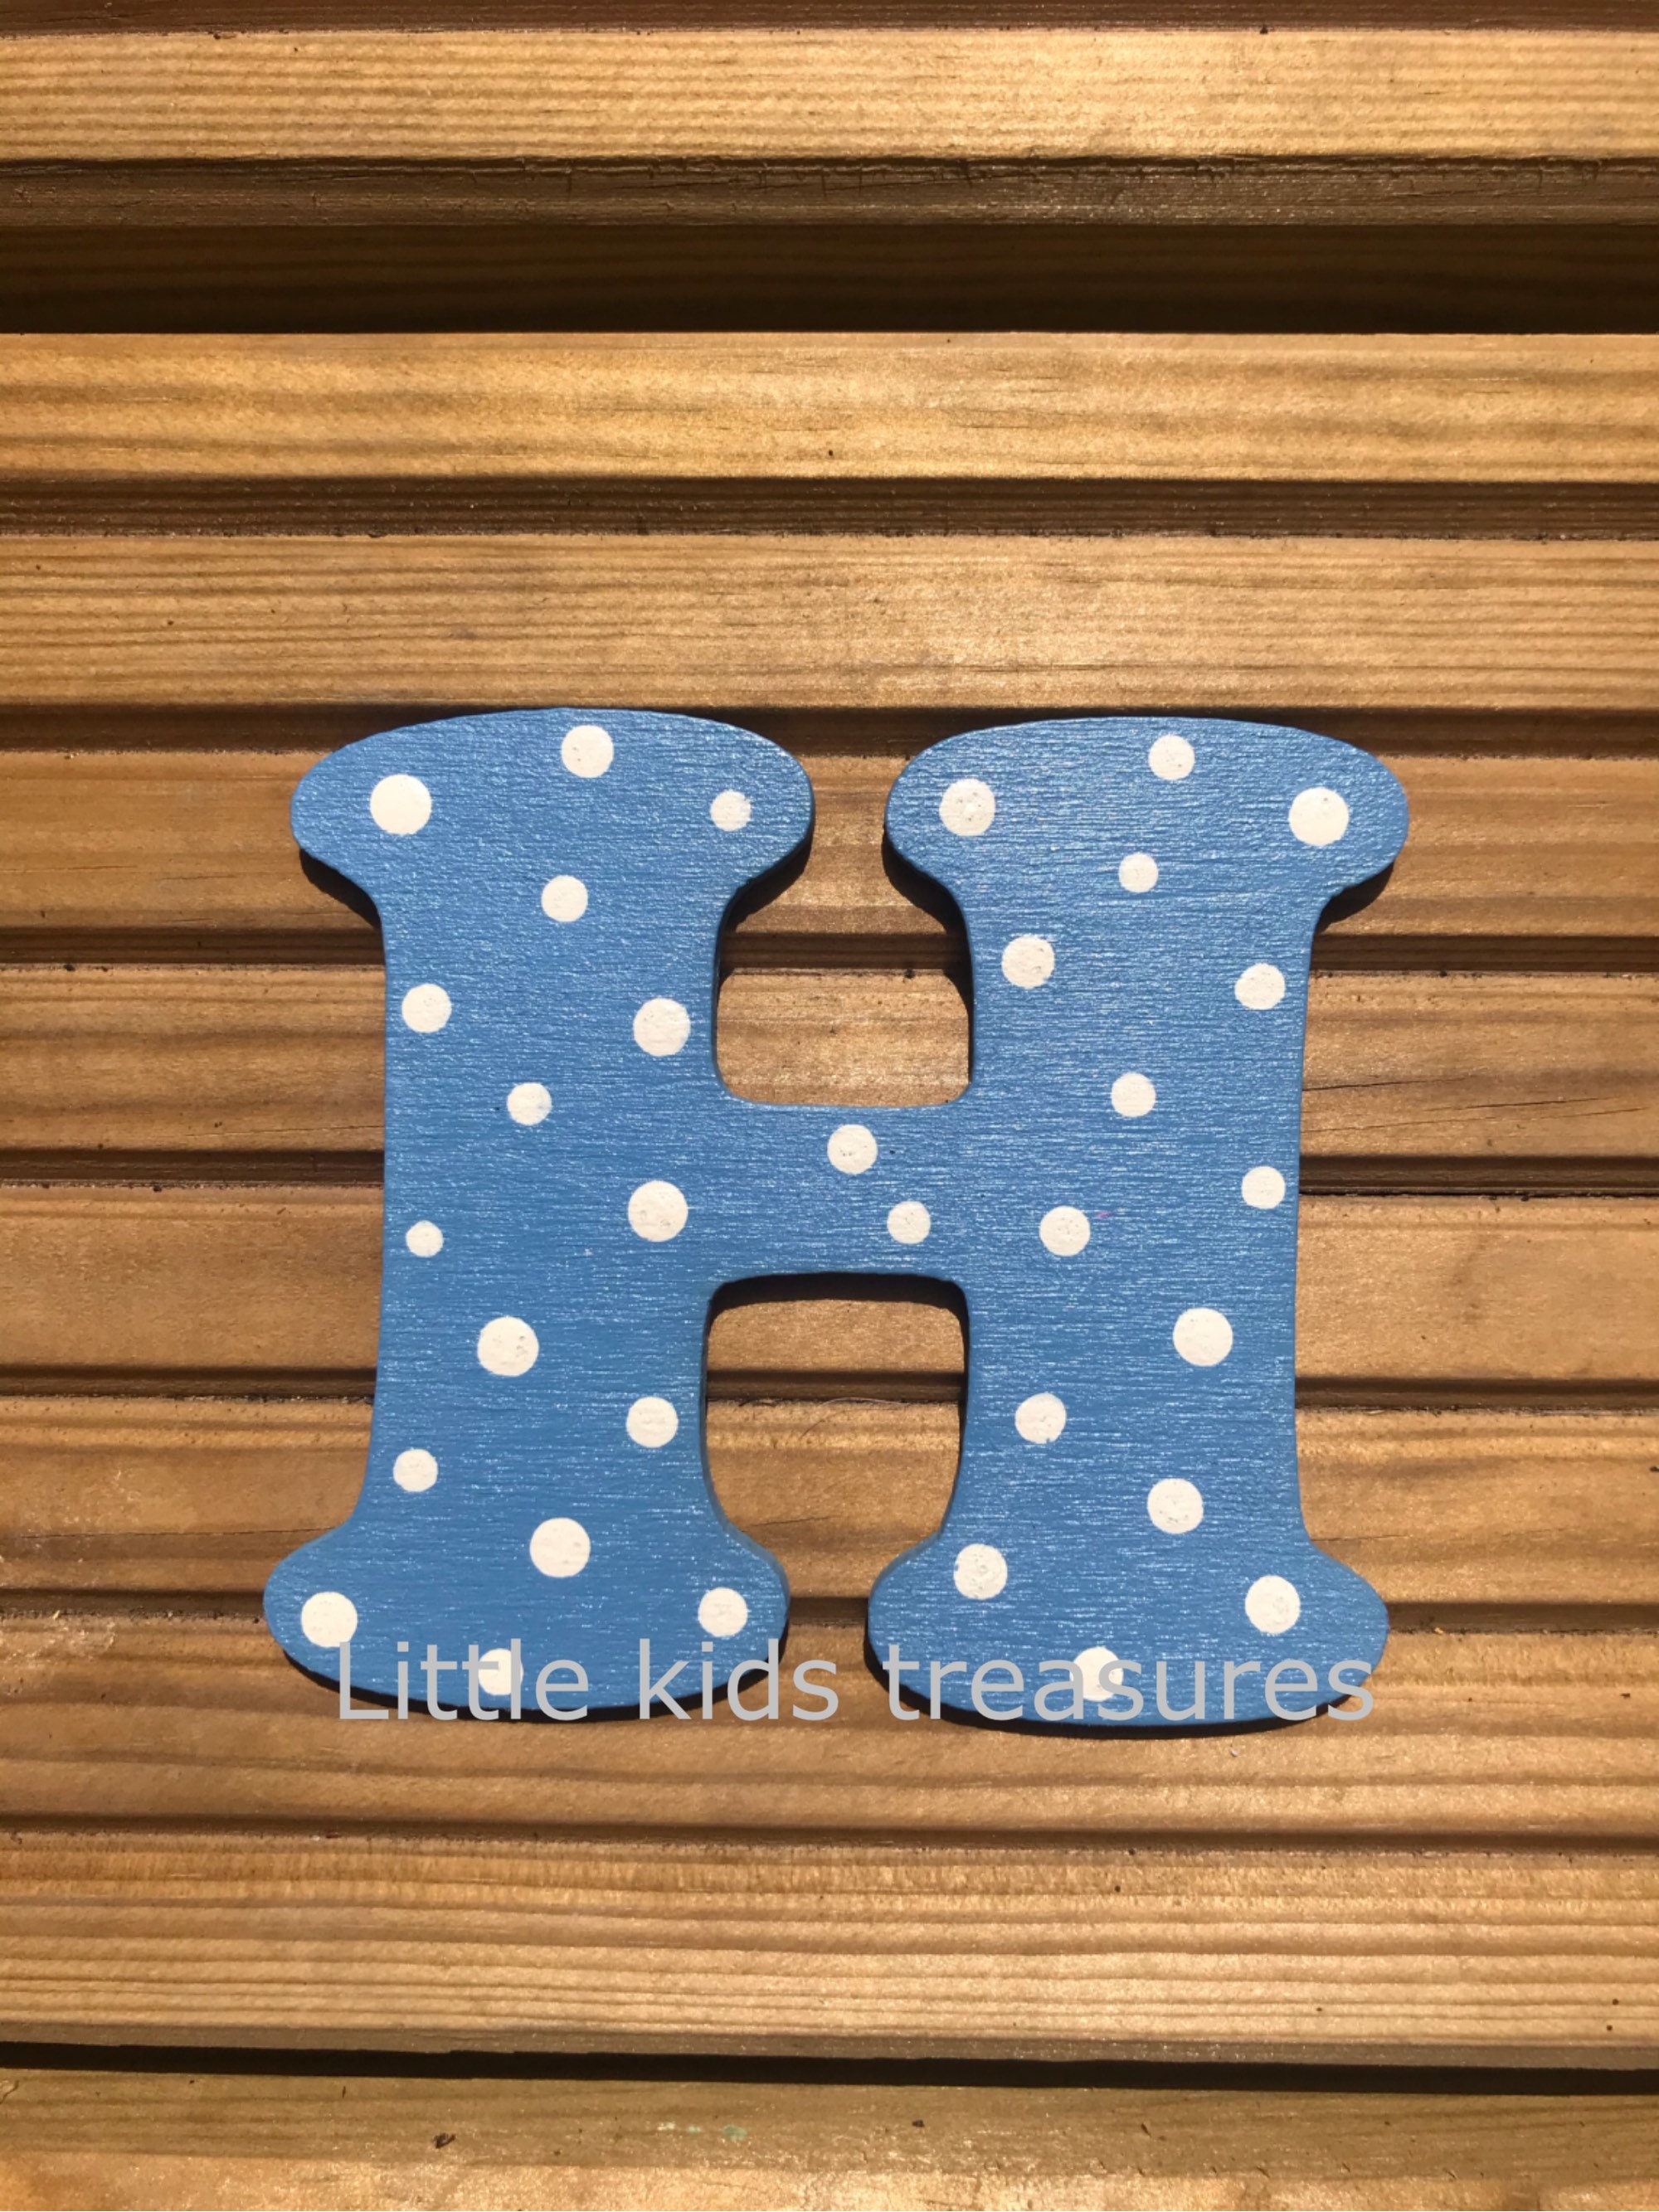 8+ Decorative Alphabet Letters